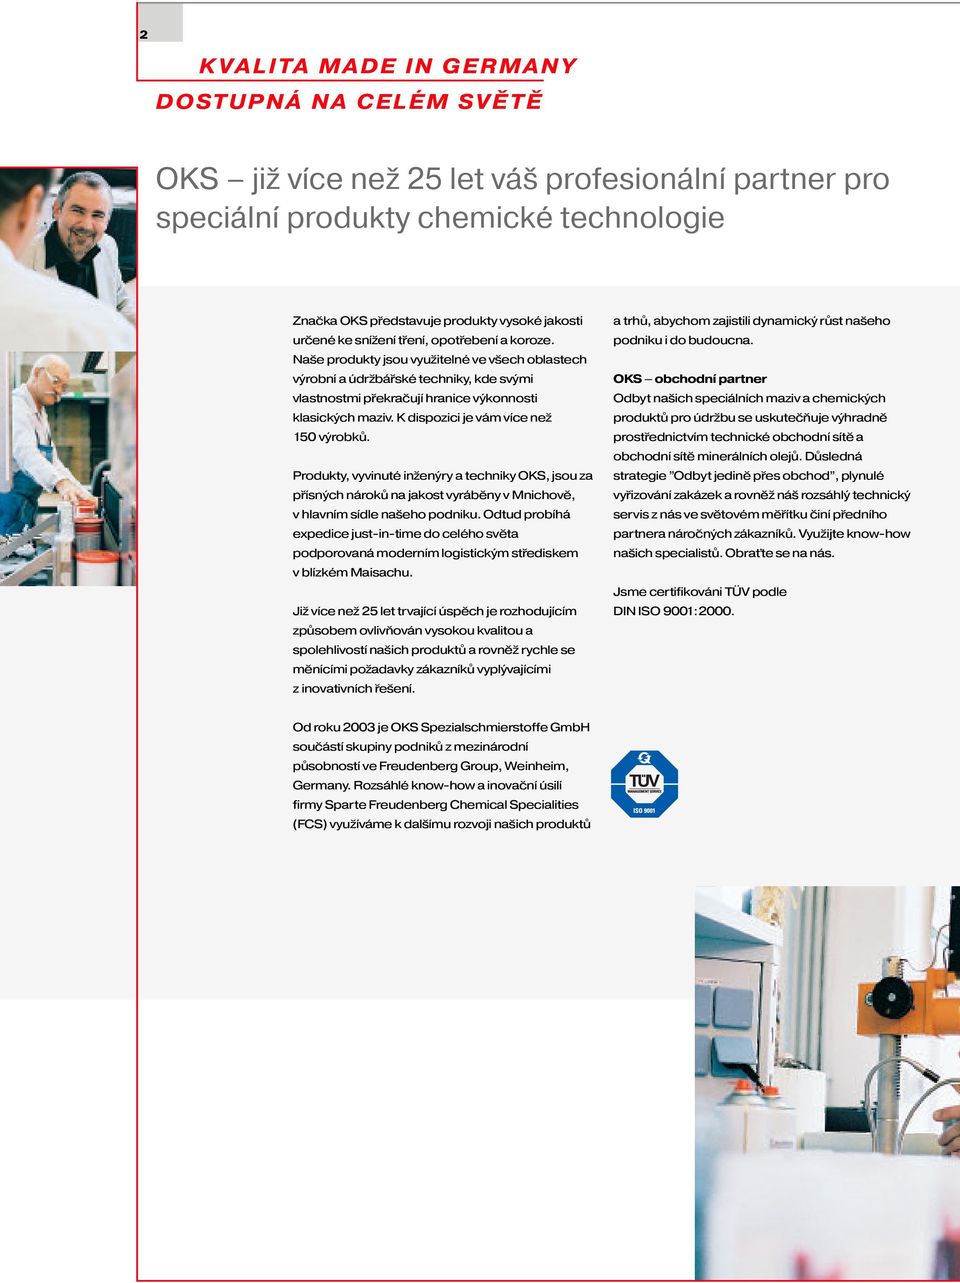 K dispozici je vám více než 150 výrobků. Produkty, vyvinuté inženýry a techniky OKS, jsou za přísných nároků na jakost vyráběny v Mnichově, v hlavním sídle našeho podniku.